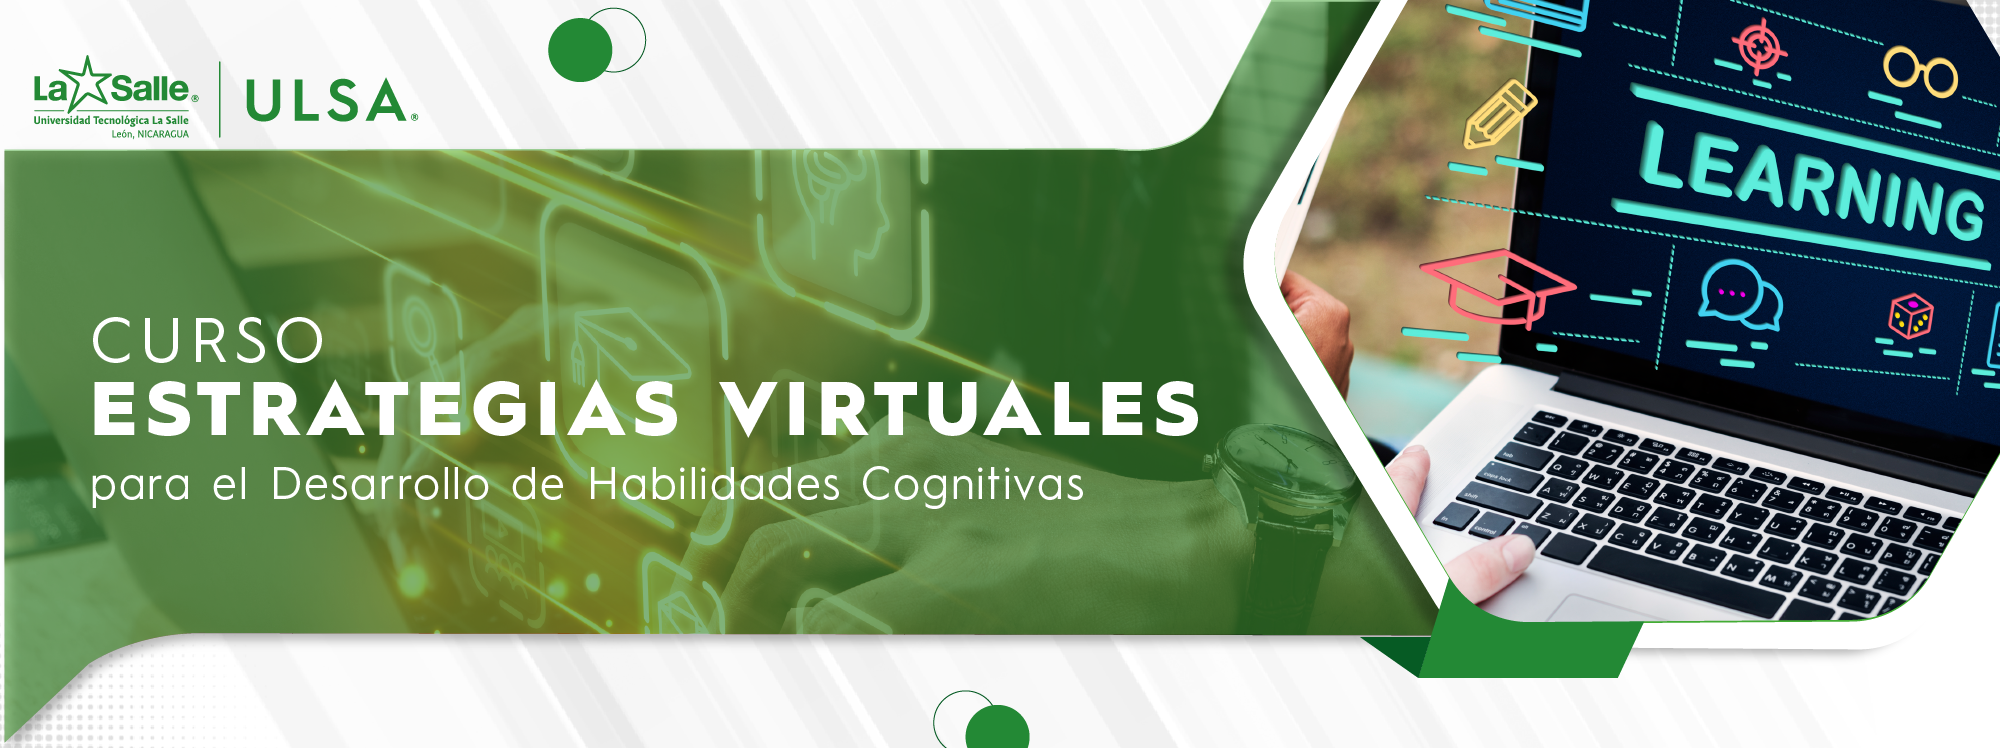 Curso: Estrategias Virtuales para el Desarrollo de Habilidades Cognitivas.